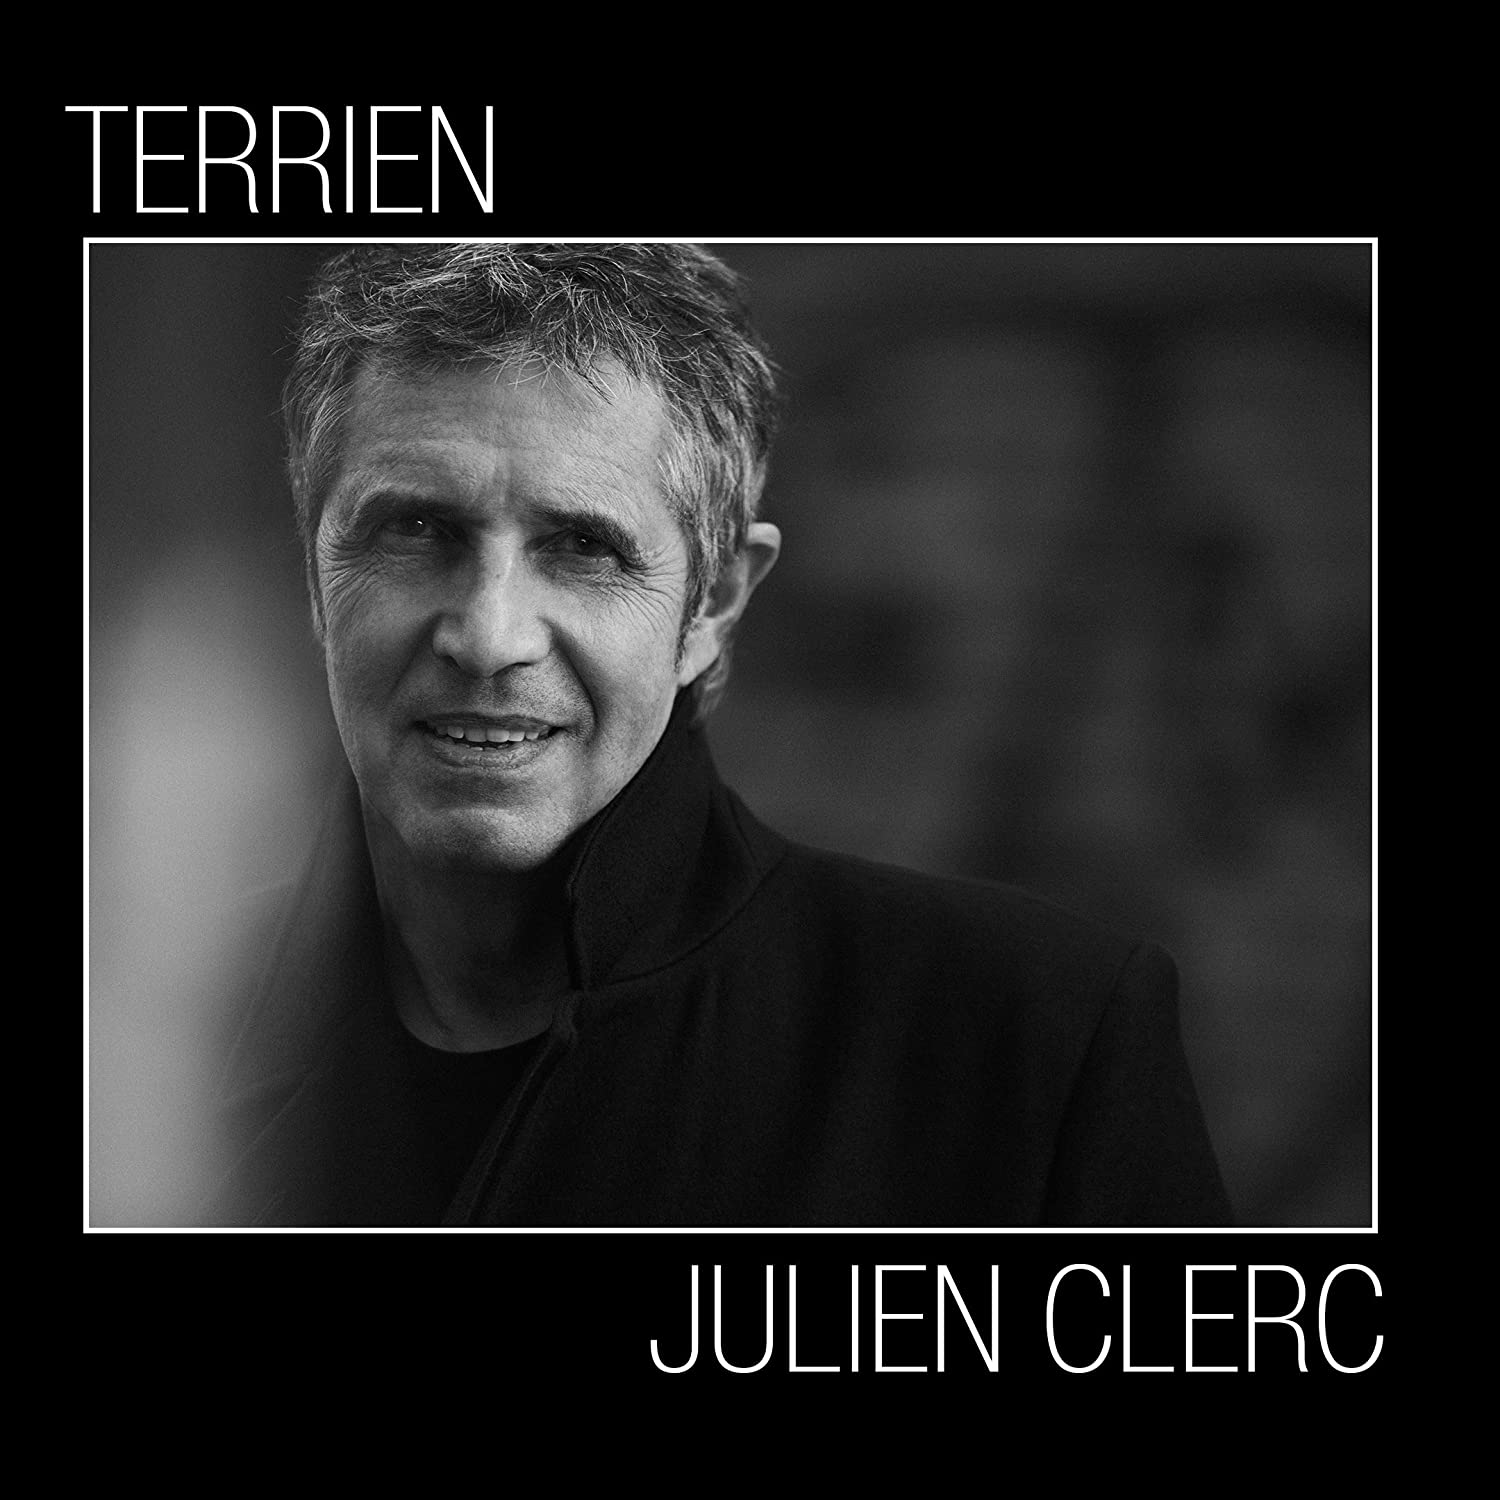 Collectors Julien Clerc - Julien Clerc - site animé par ses fans